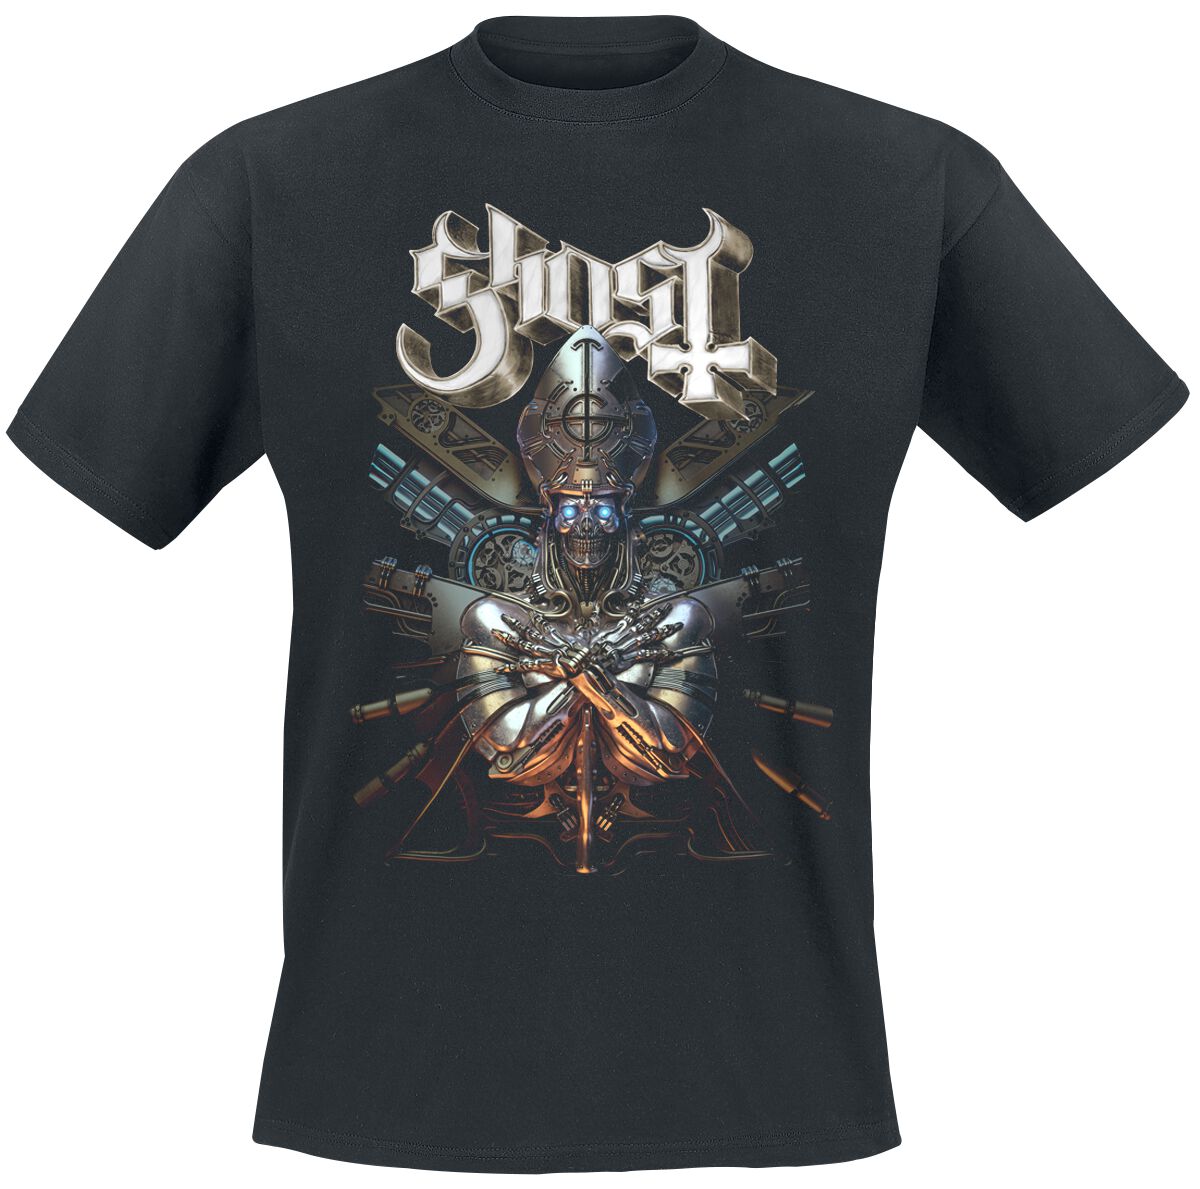 Ghost T-Shirt - Phantomime With Background - S bis 4XL - für Männer - Größe 4XL - schwarz  - Lizenziertes Merchandise!